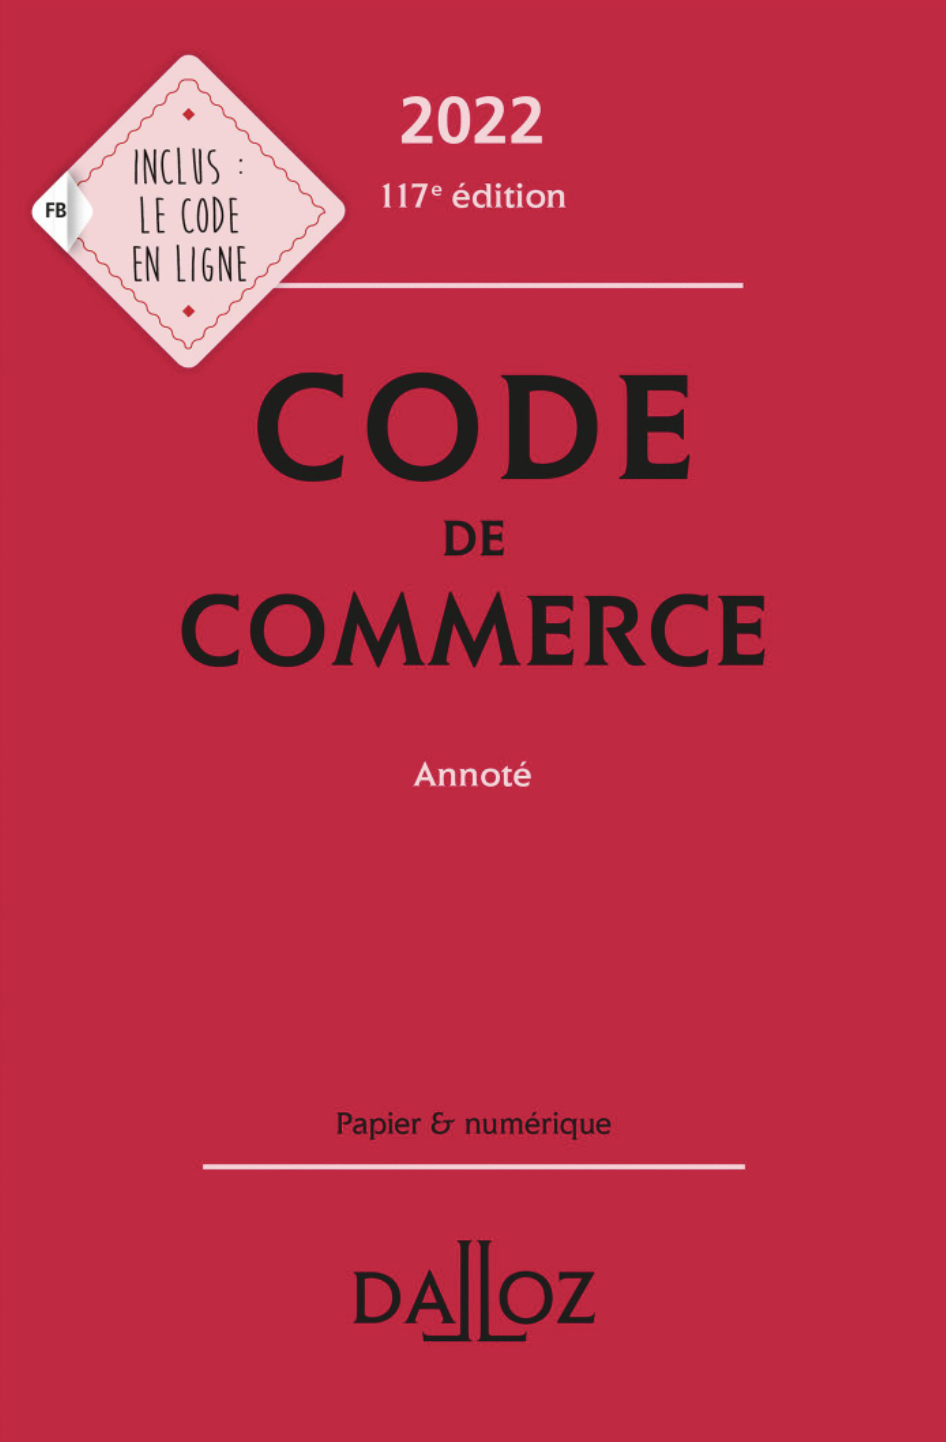 Code de commerce